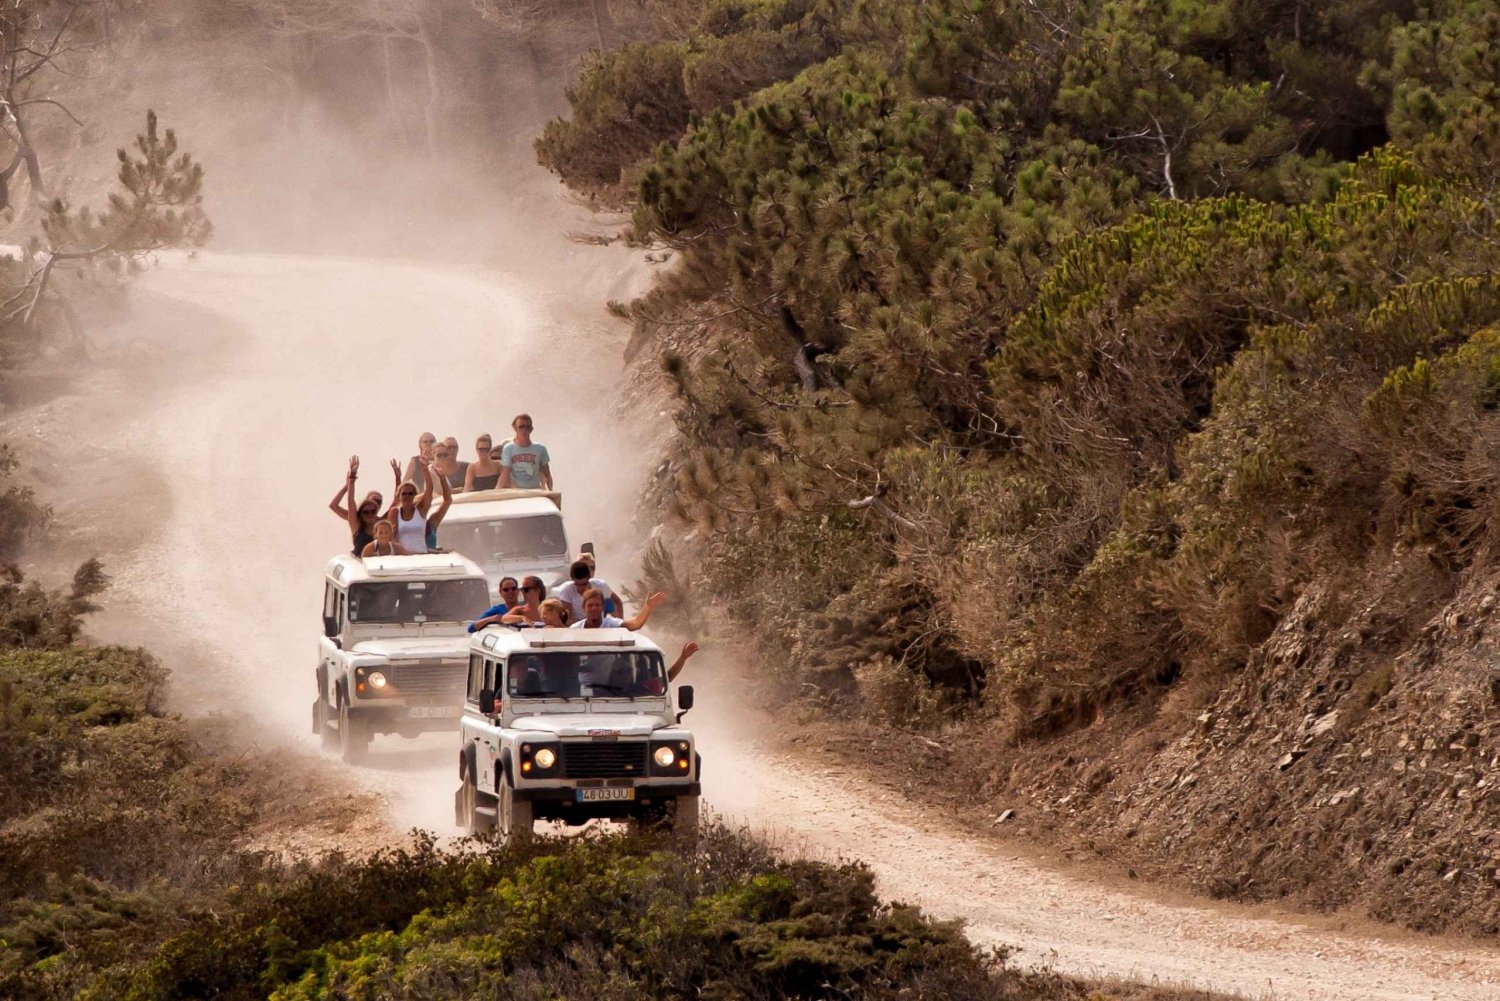 Algarve: Jeepsafari mit Brennereibesichtigung & Mittagessen